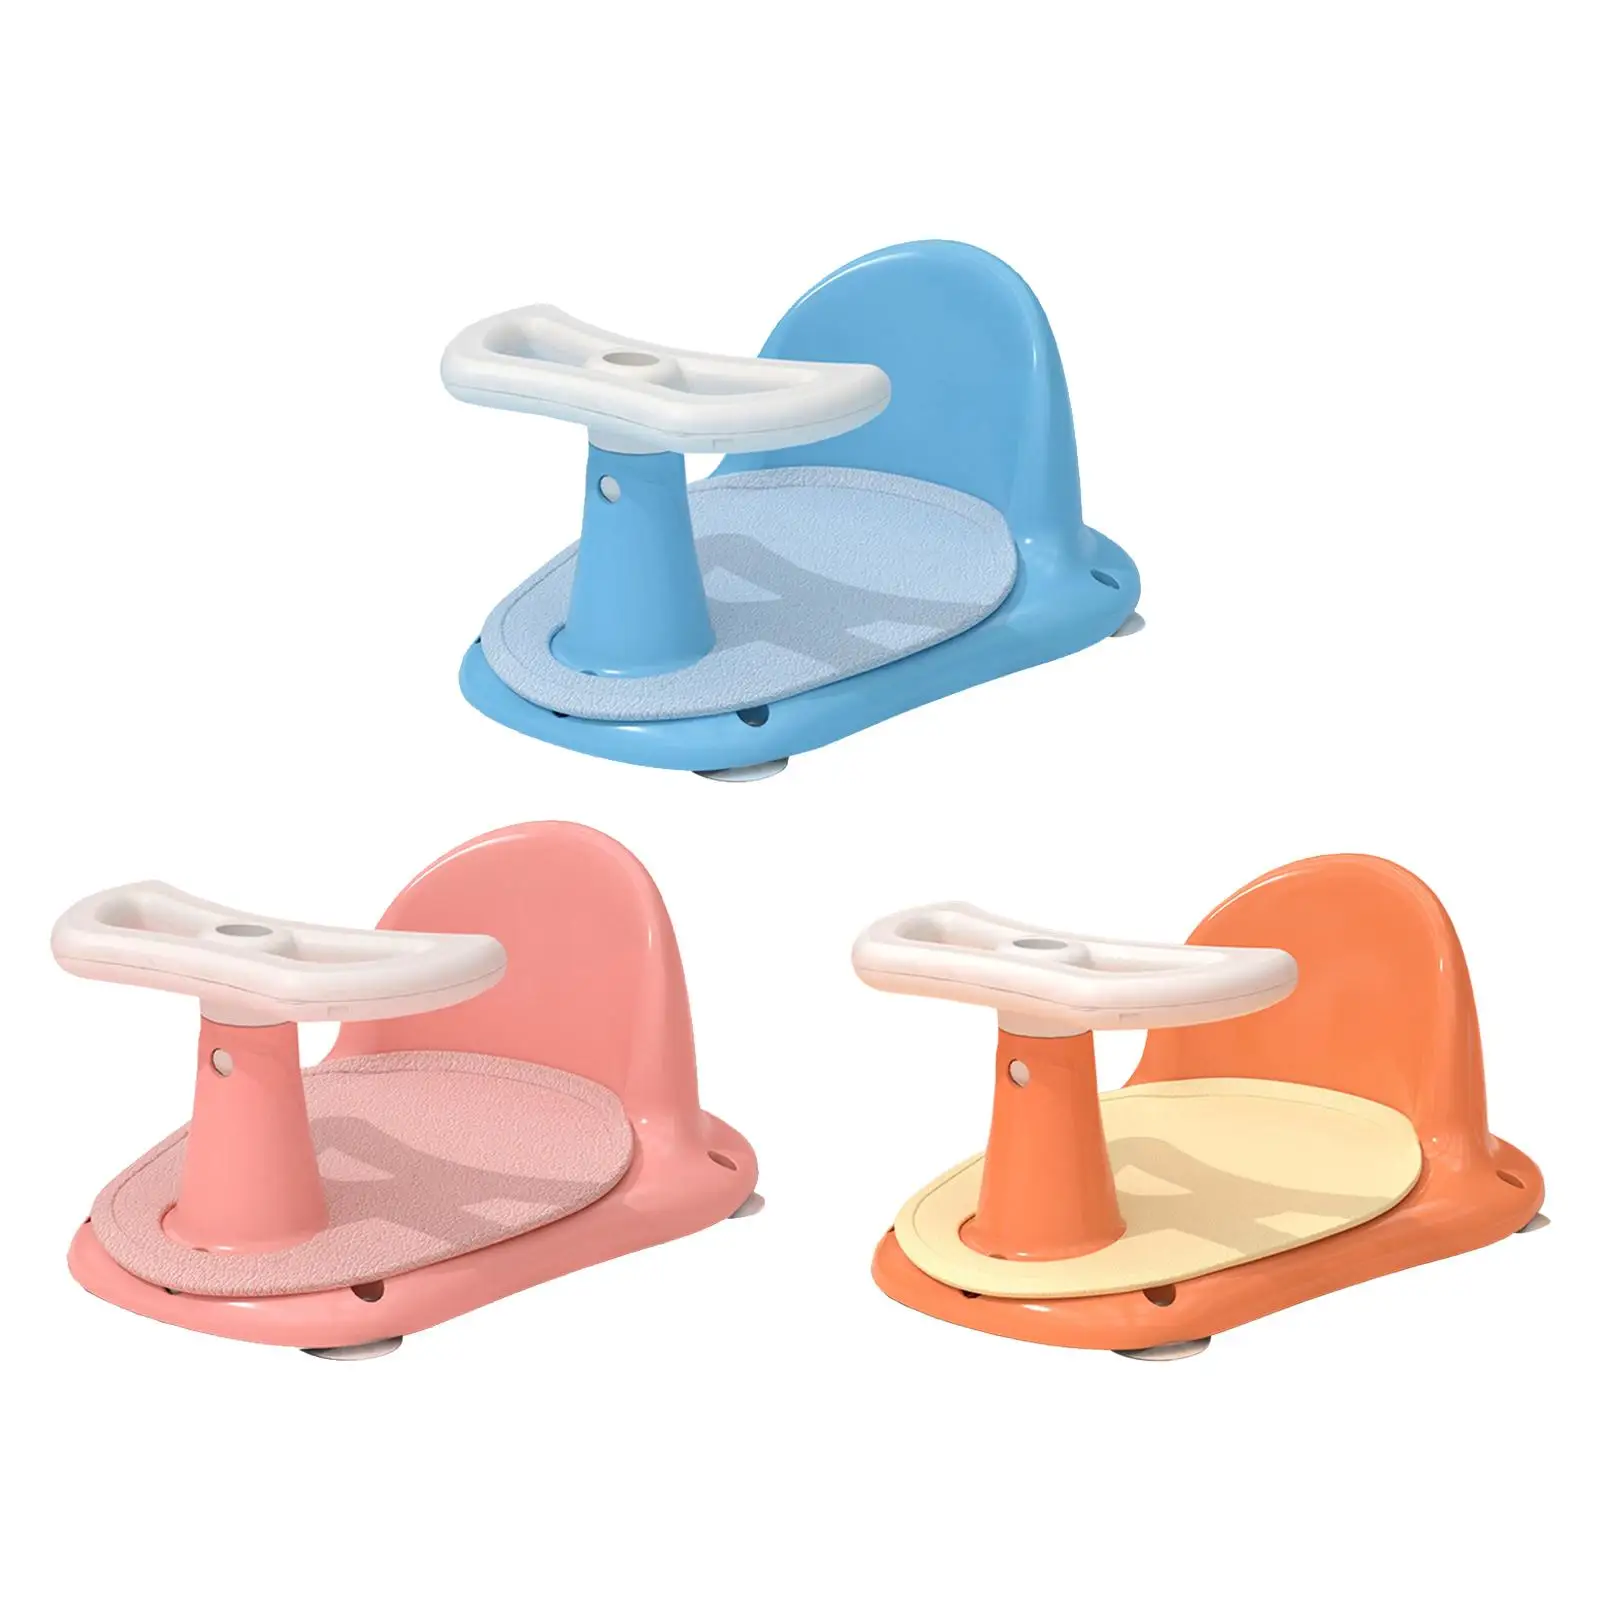 Shower Bath Seat, Bathtub Seat with Non-slip Mat, Bath Chair Bathroom Tub Chair, Suction Cup for Newborn